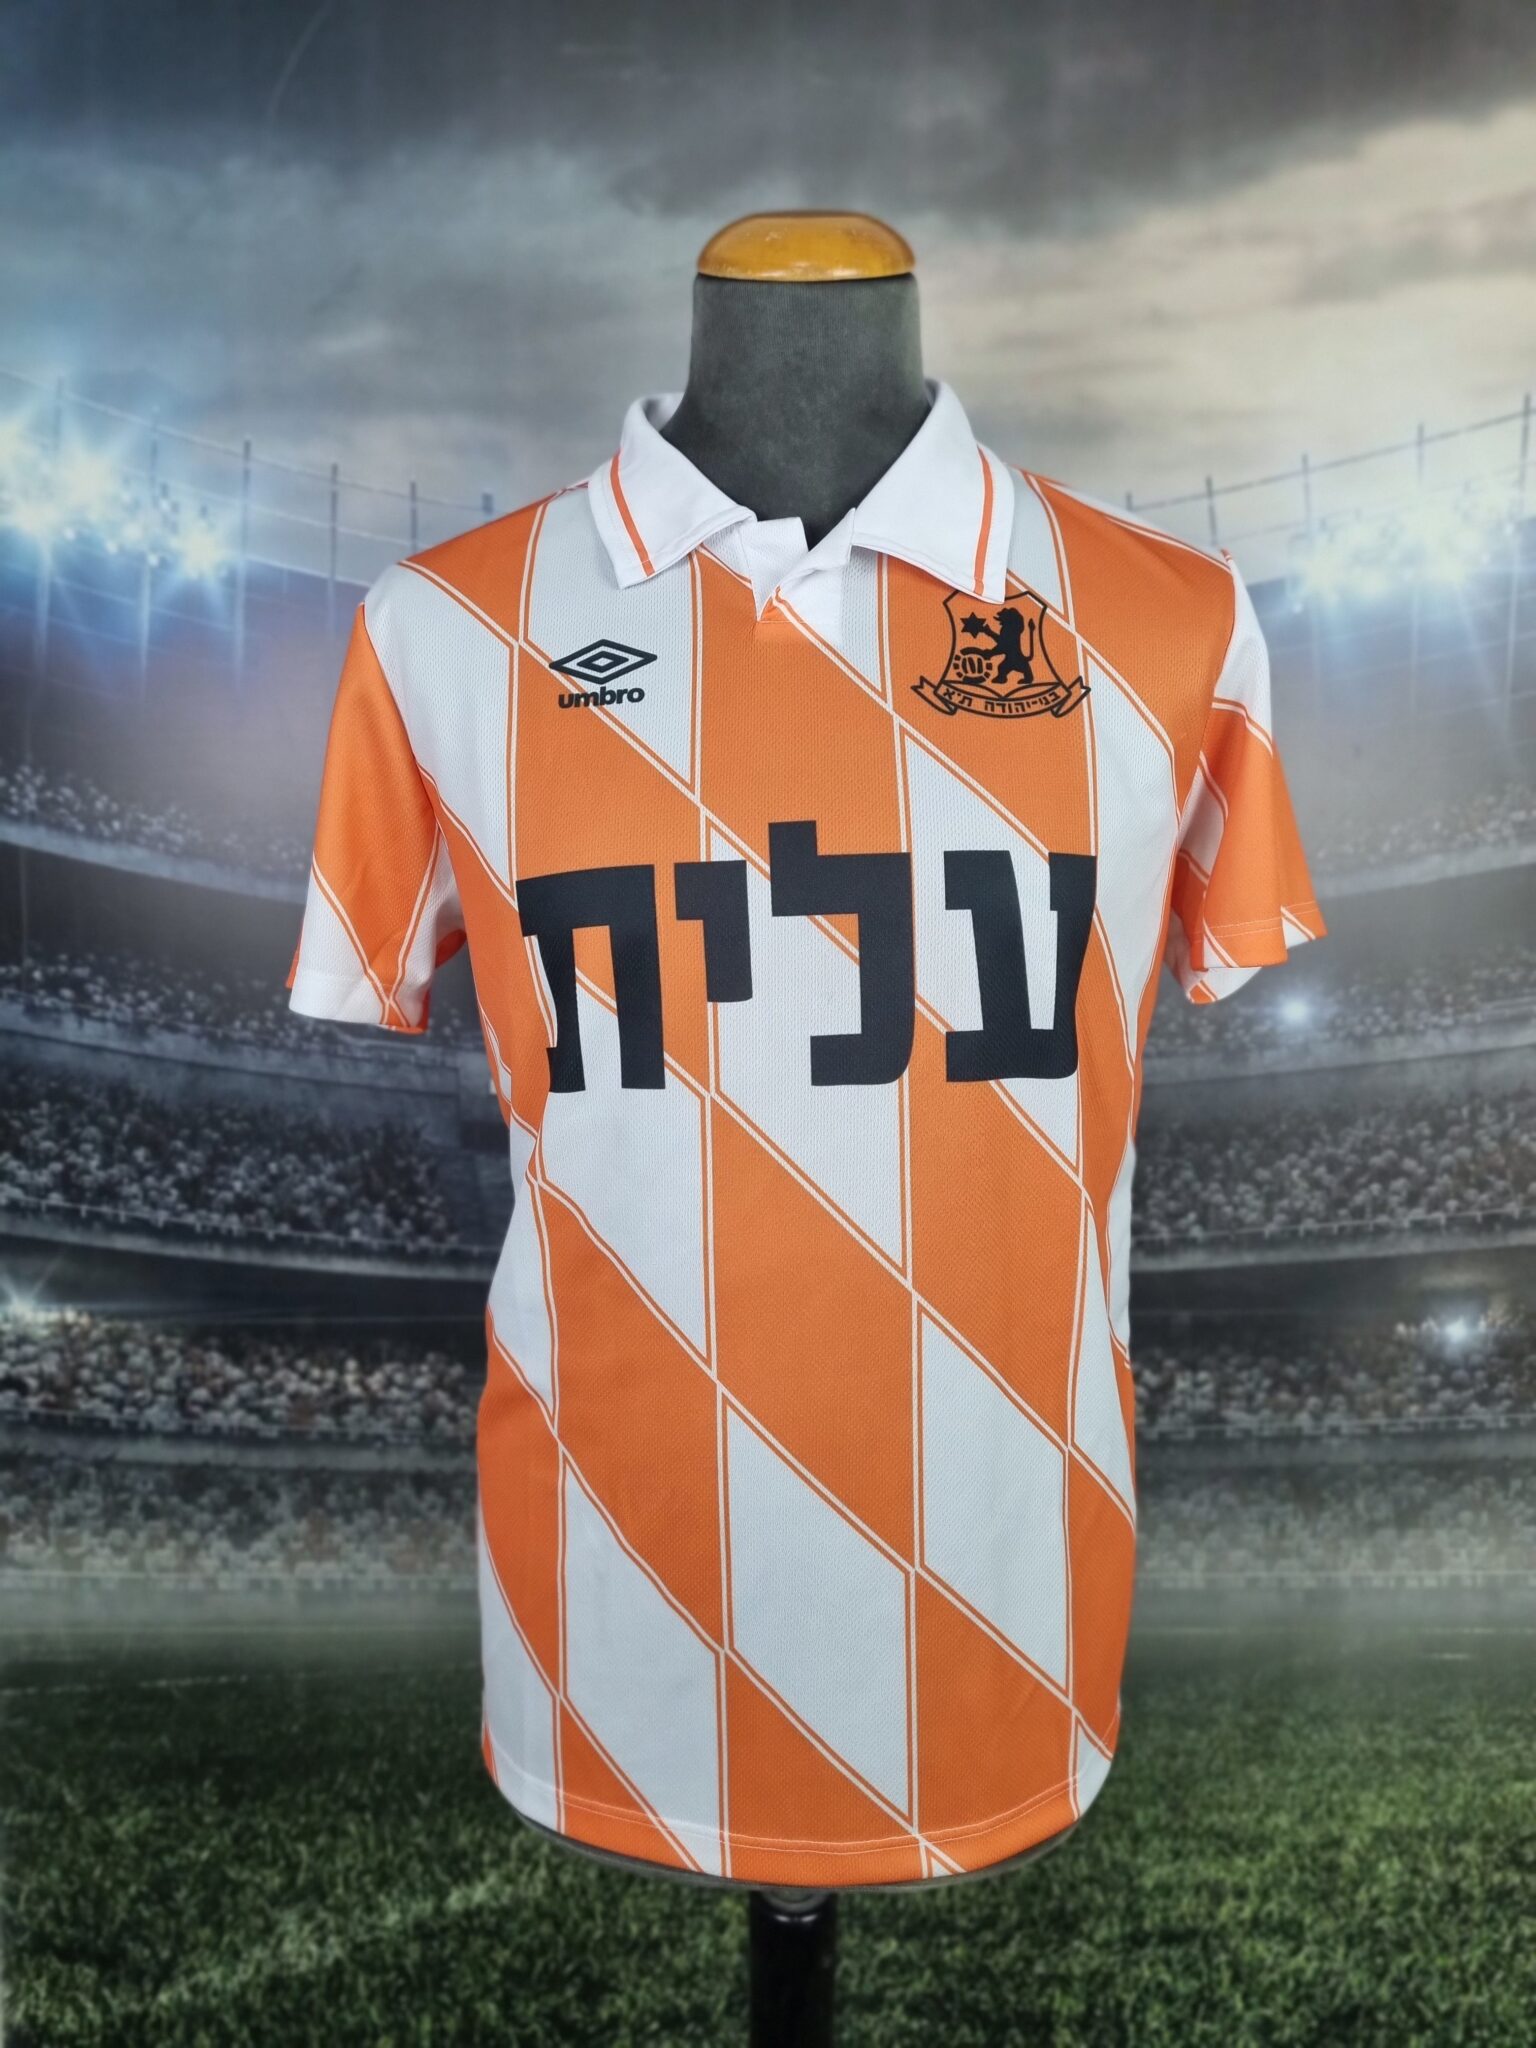 Bnei Yehuda Tel Aviv Home Football Jersey 1992/1993 Vintage Shirt Retro Israel #9 Mykola Kudrytsky (ניקולאי קודריצקי) - Sport Club Memories